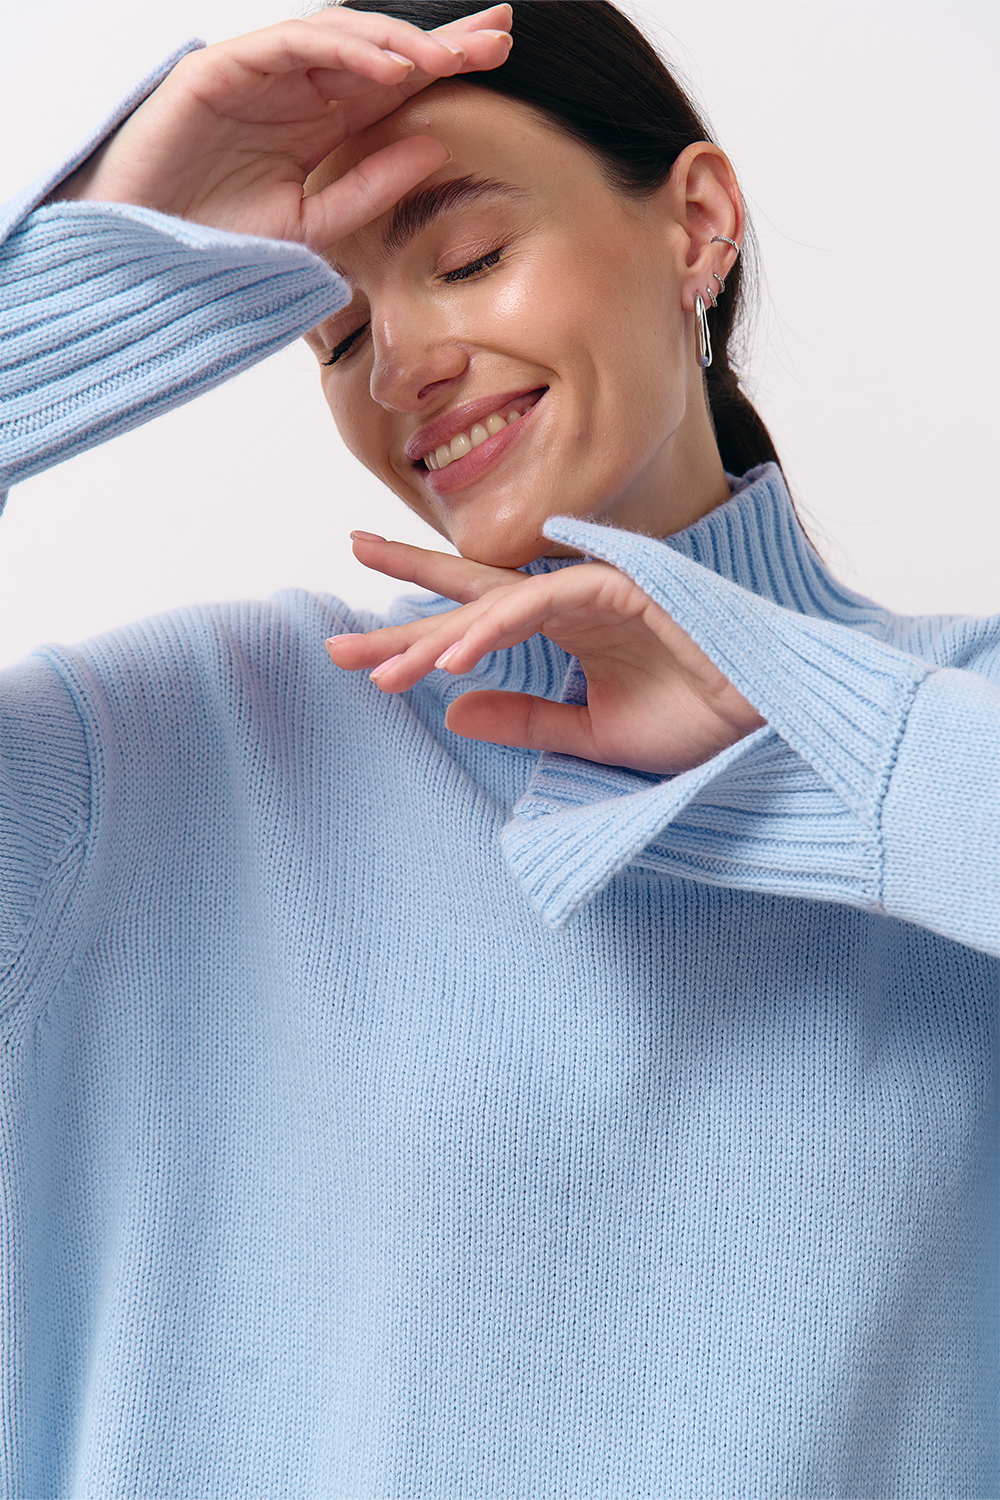 Голубой свитер из шерсти мериноса - купить в интернет-магазине женской  одежды Natali Bolgar